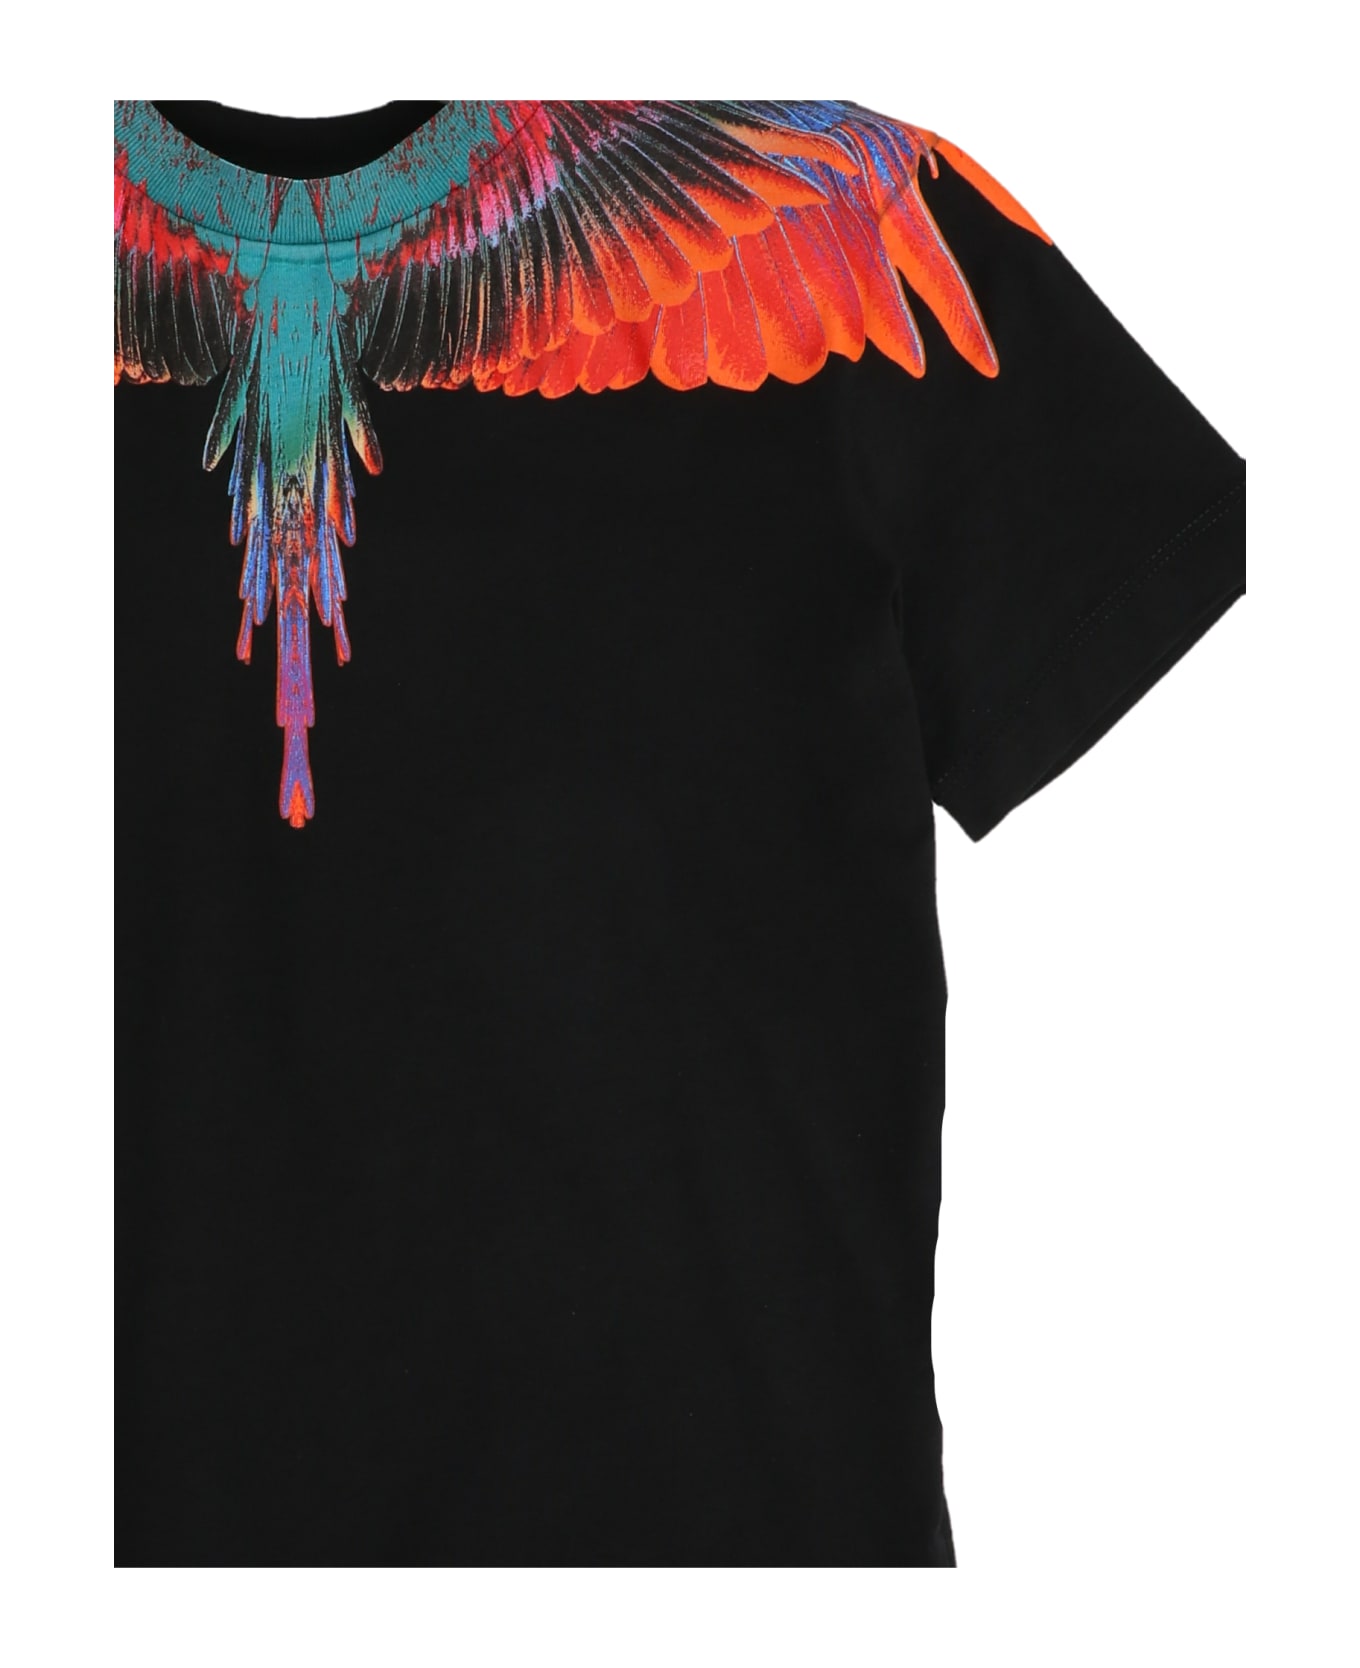 Marcelo Burlon T-shirt 'sunset Wings' - Black  